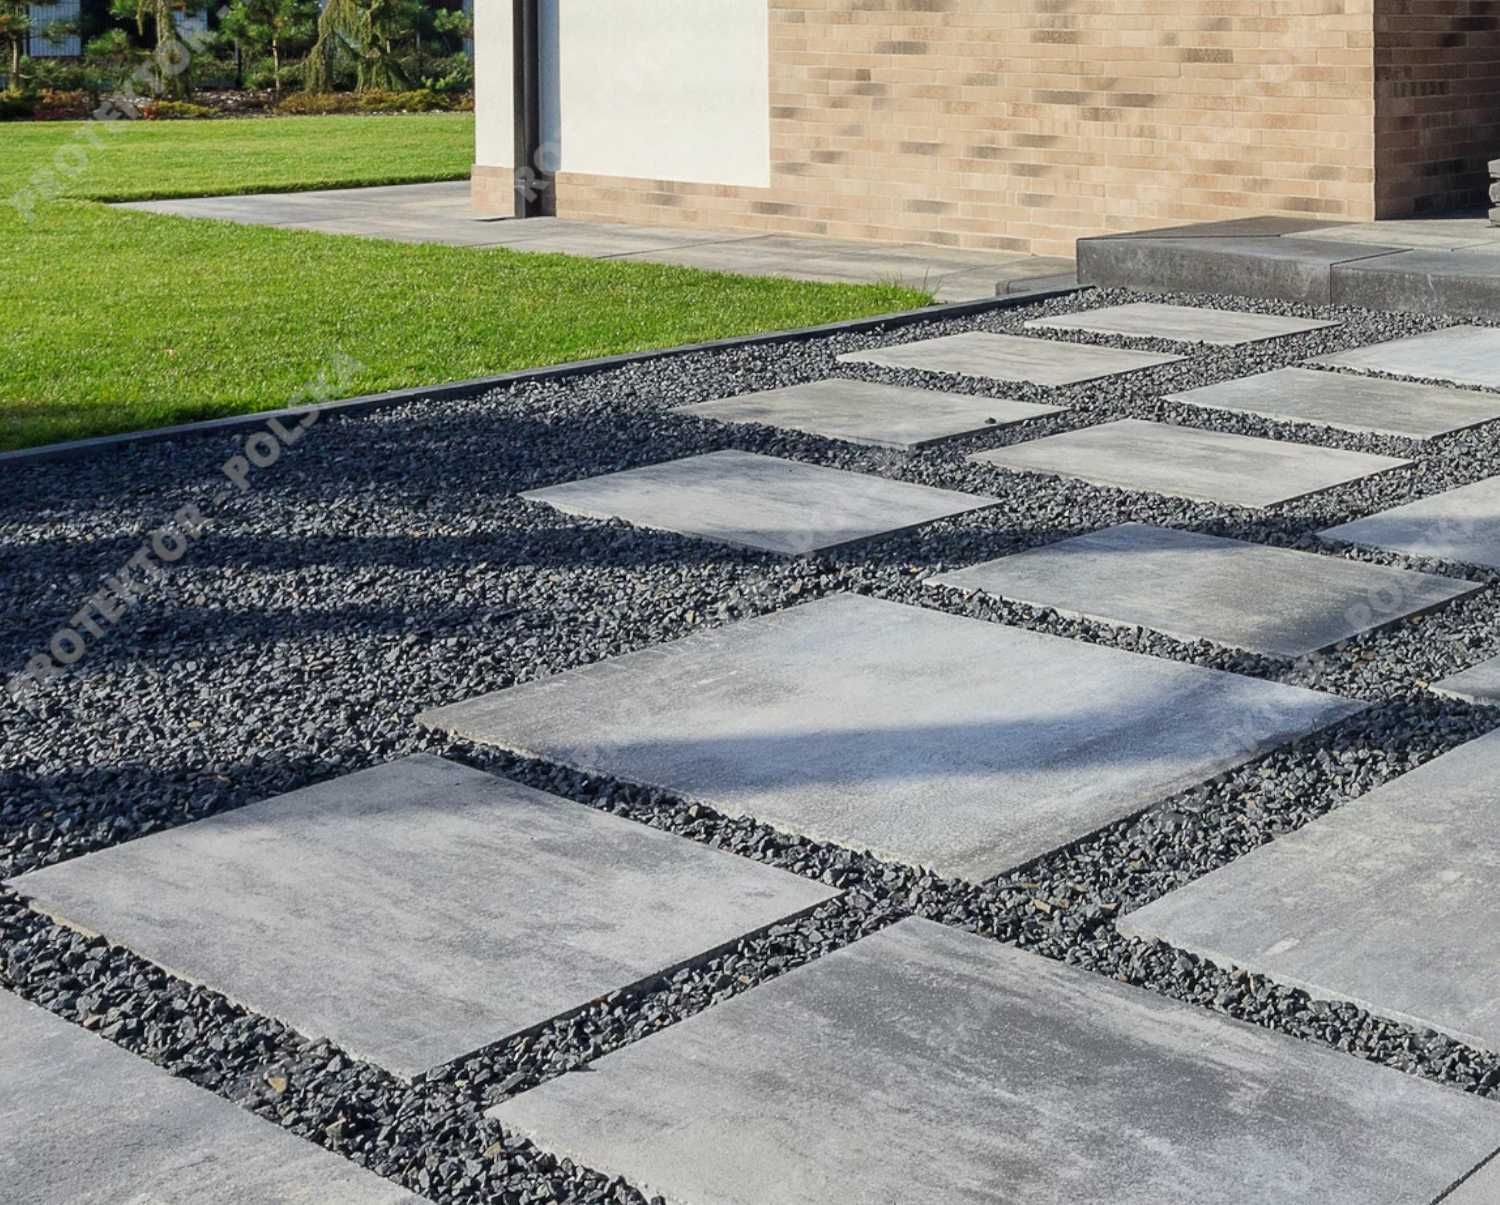 MAGNA płyta betonowa taras chodnik kostka brukowa ogród powierzchnia